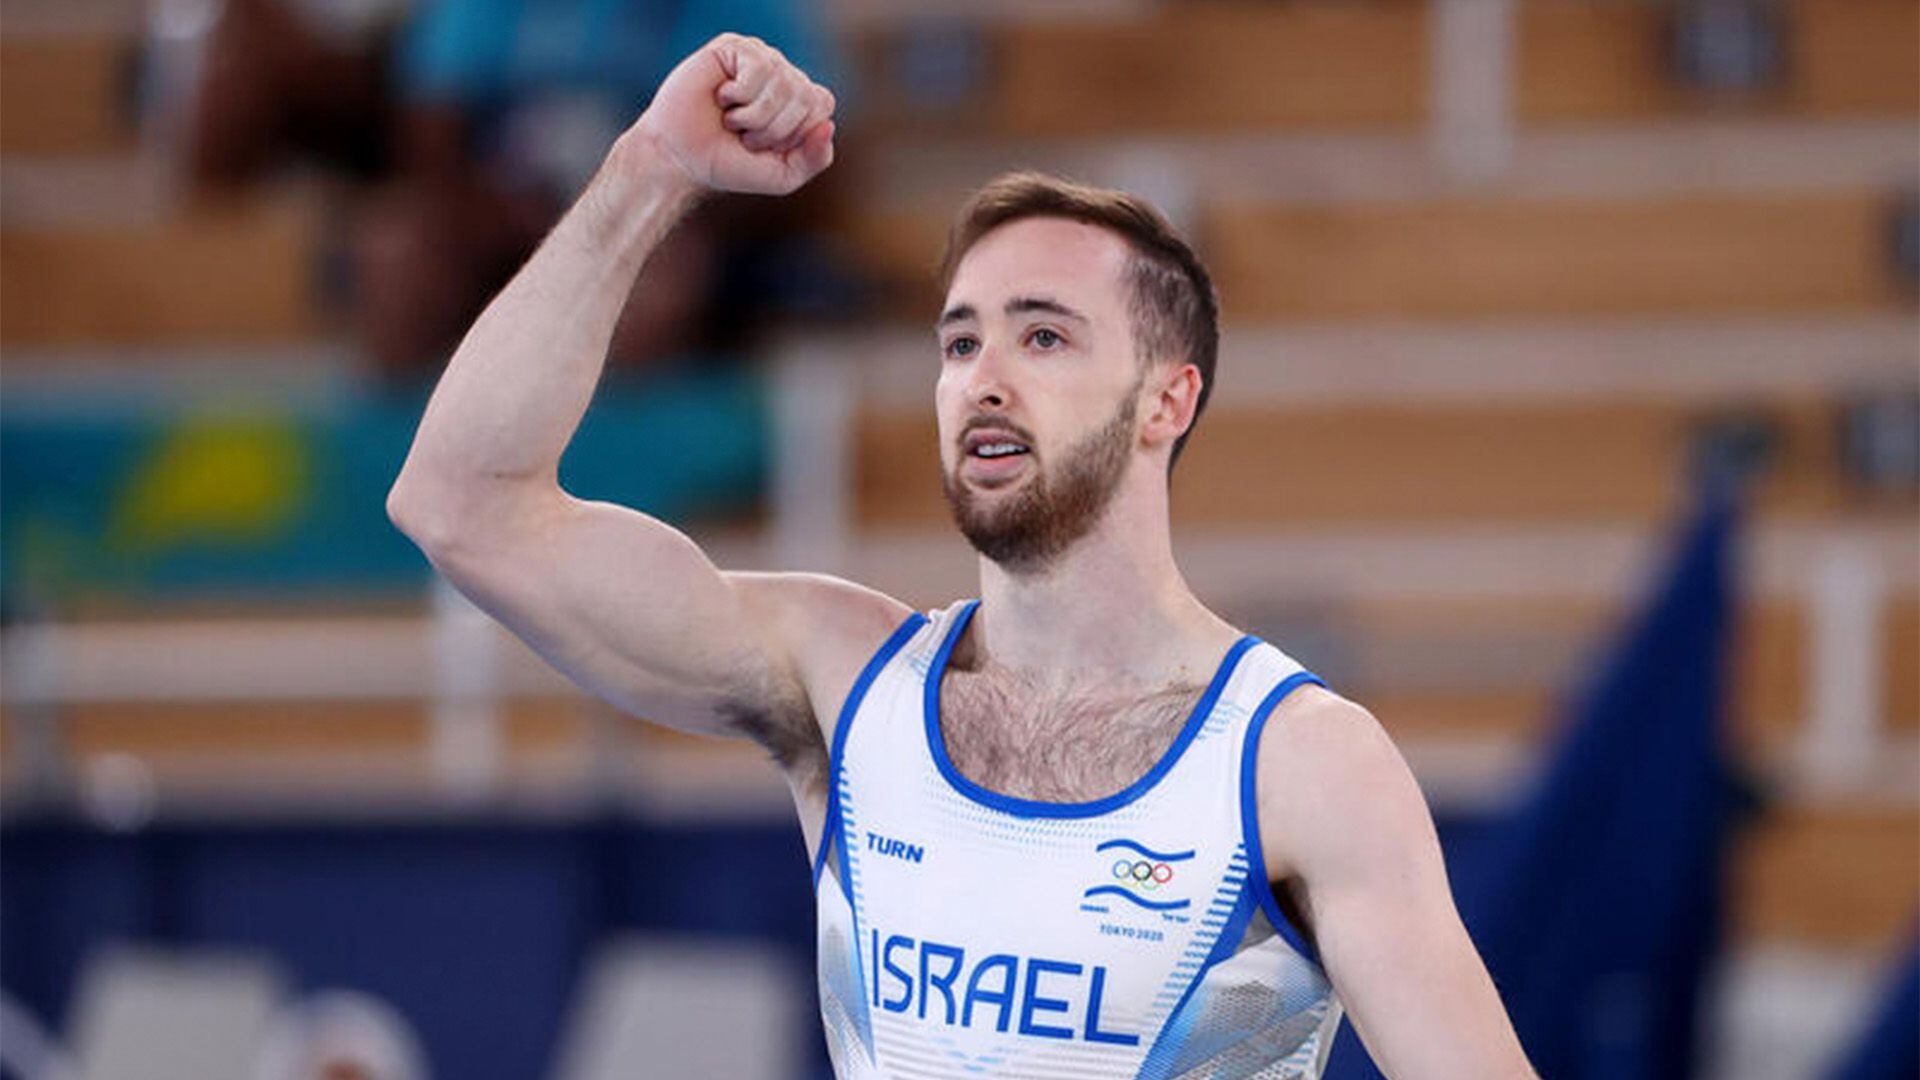 El israelí Artem Dolgopyat fue campeón olímpico en suelo tras varios años dominando el circuito de Copas del Mundo en ese aparato